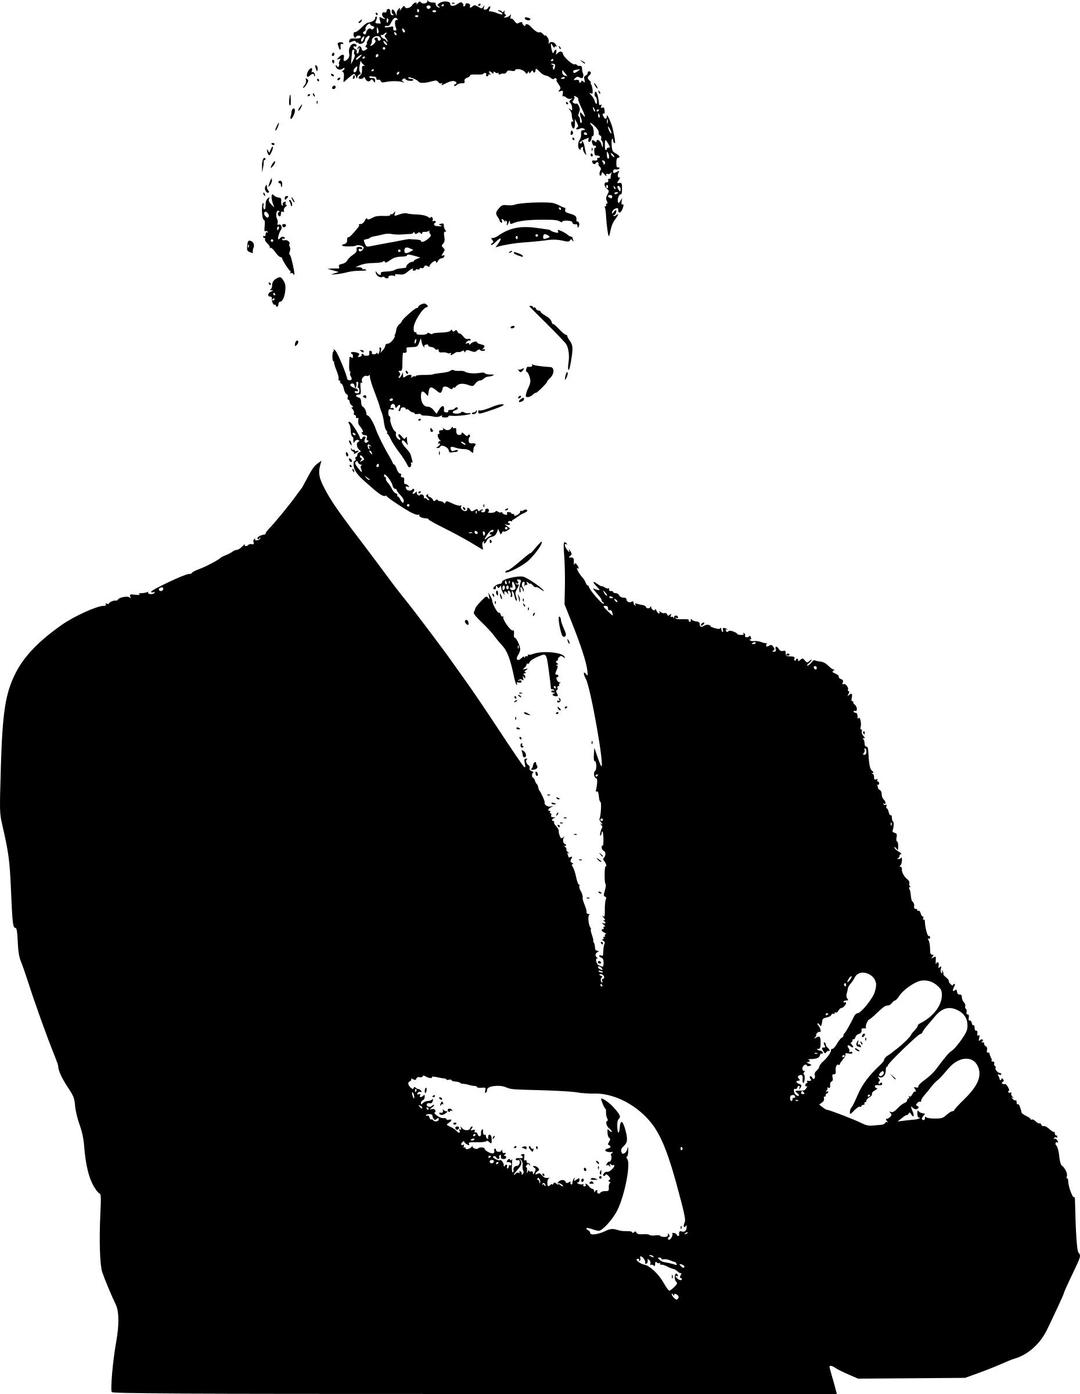 Barack Obama Print png transparent